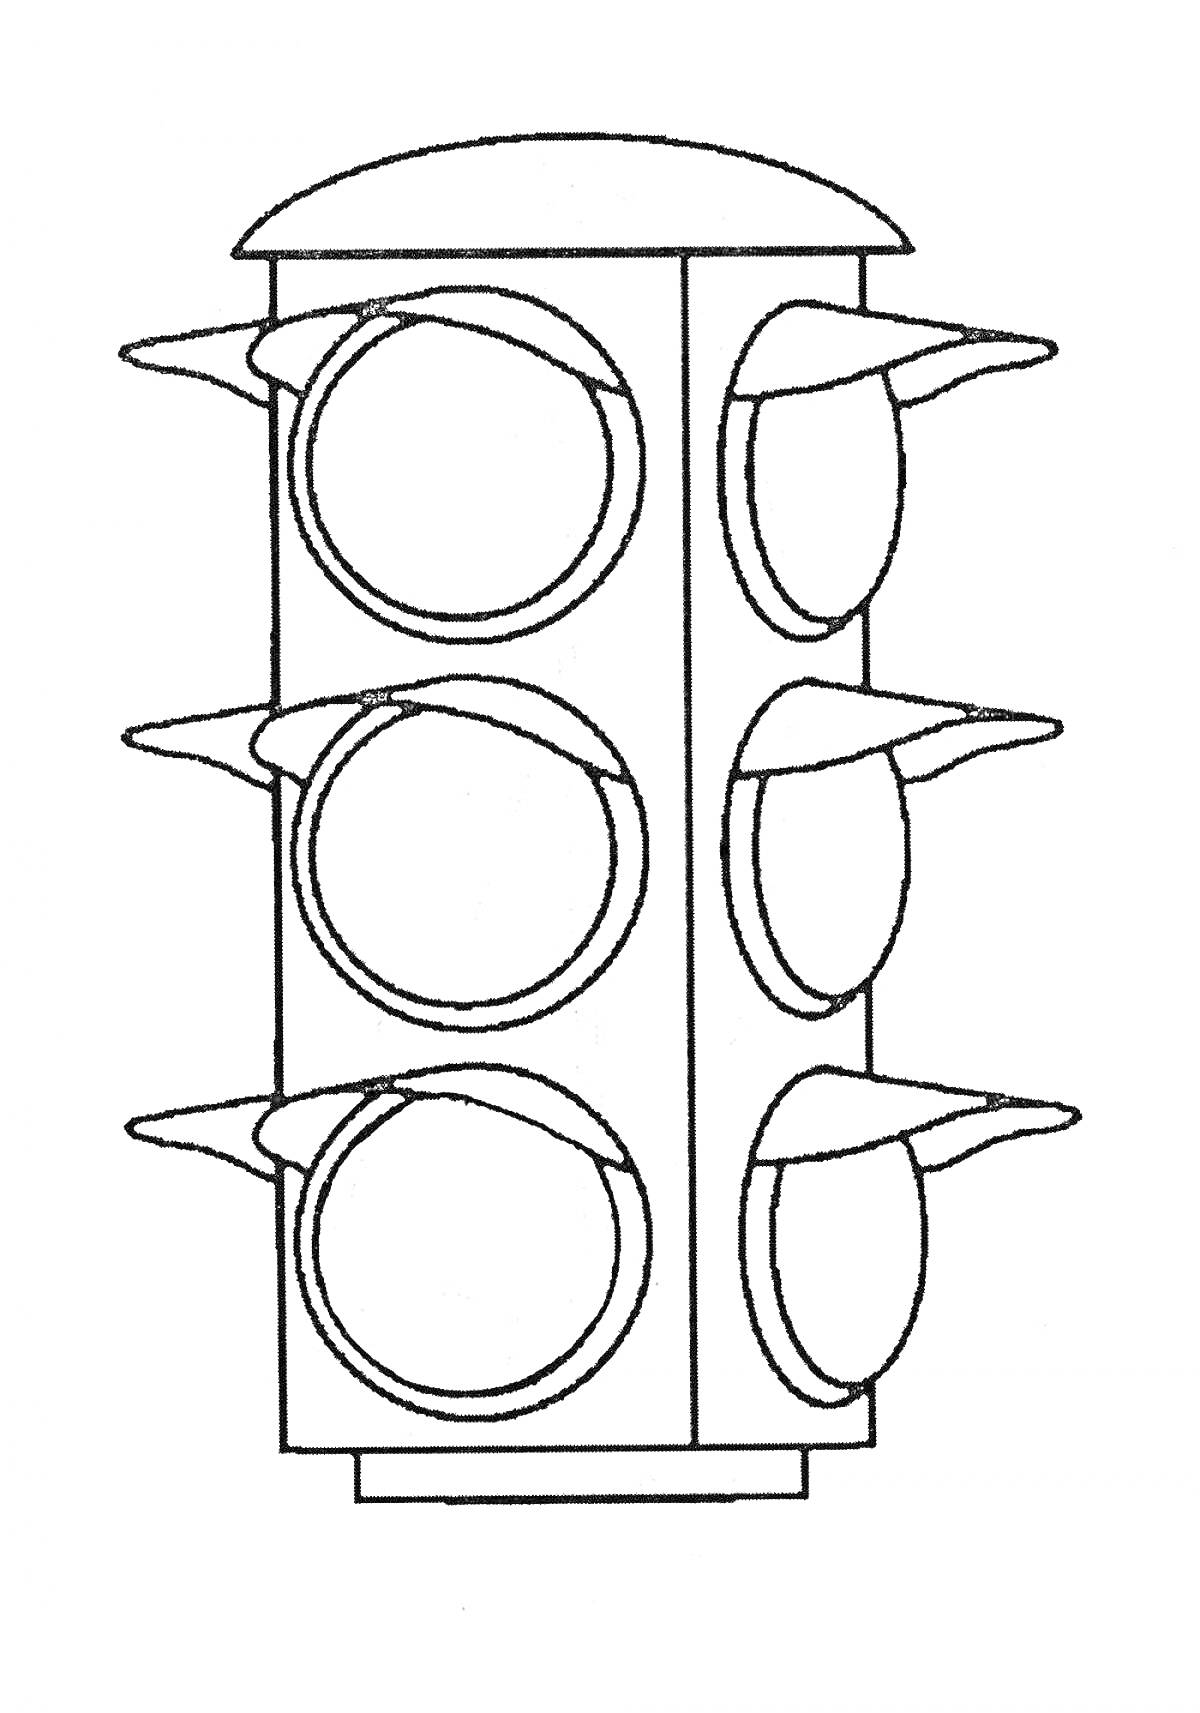 Светофор с двумя рядами из трёх сигналов с козырьками